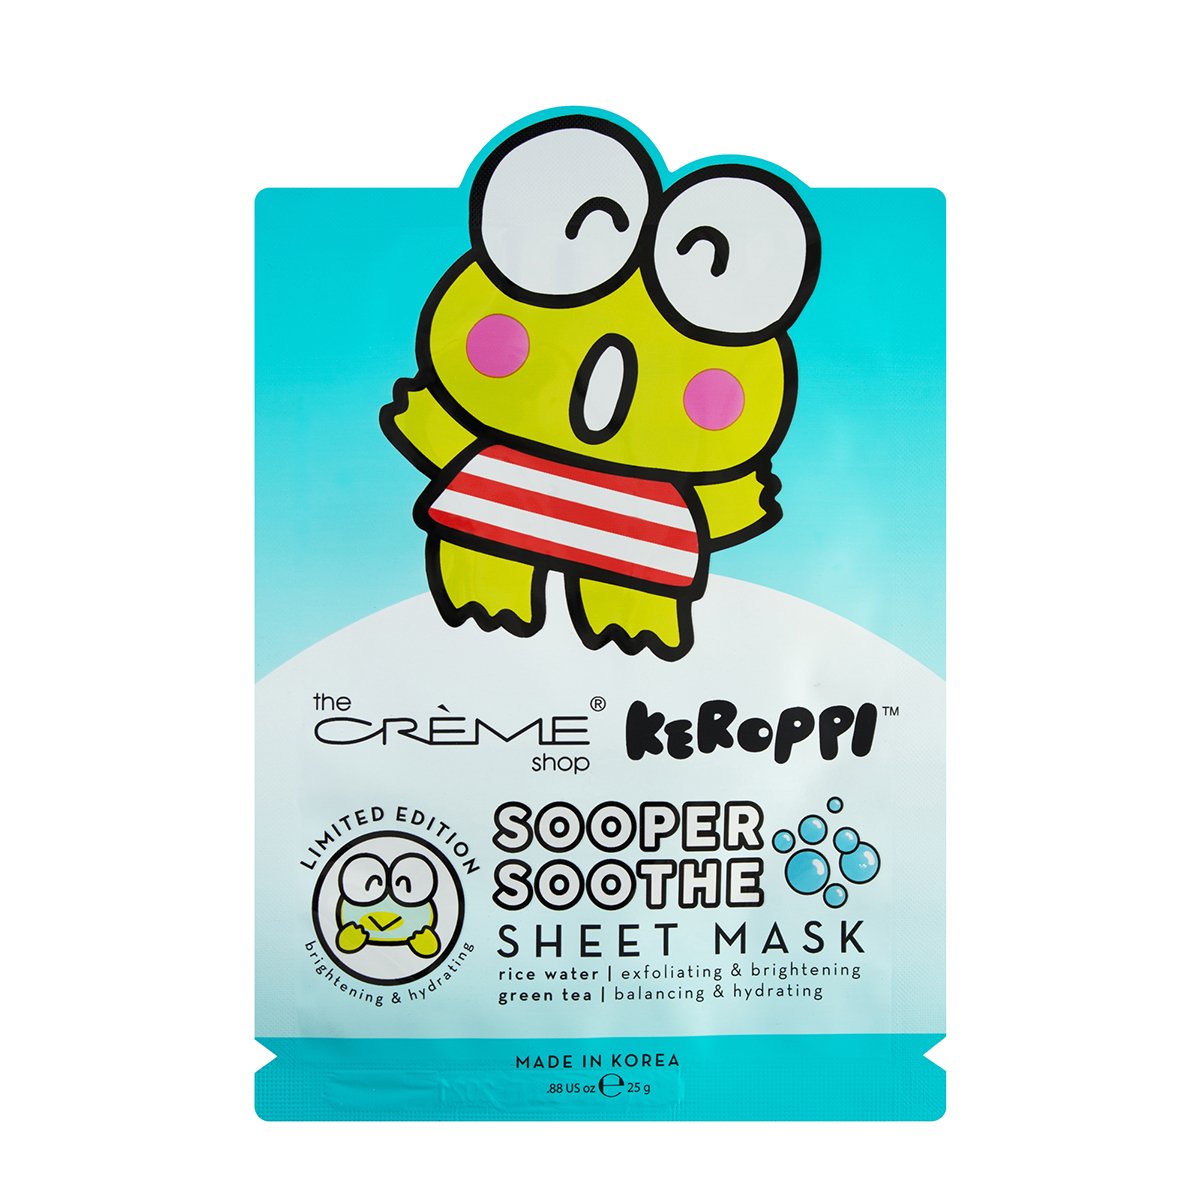 Keroppi Sooper Soothe Sheet Mask - The Crème Shop